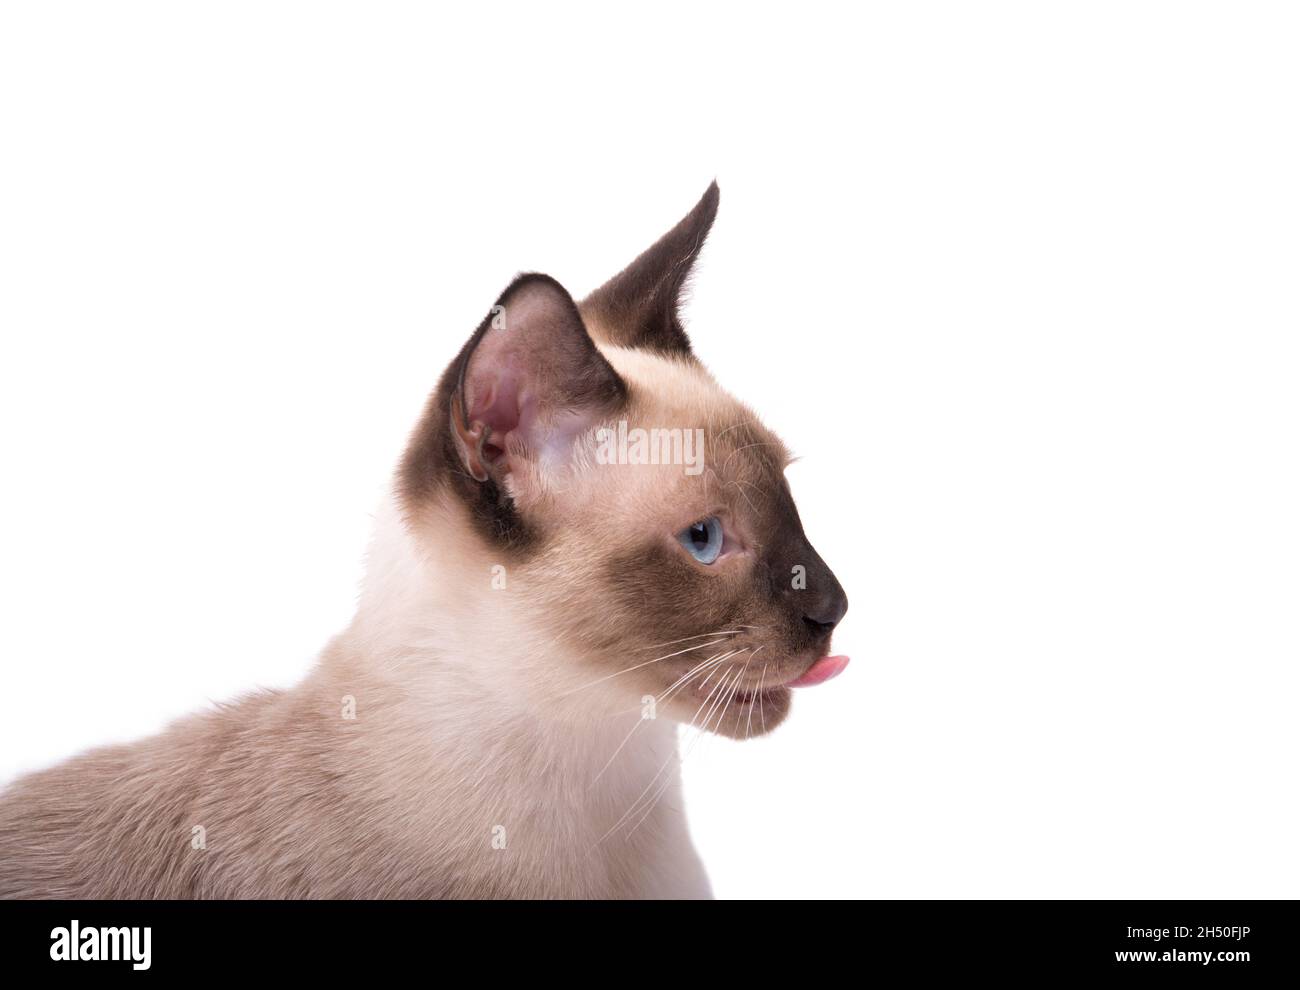 Vue latérale d'un jeune chat siamois avec sa langue sortie, isolé sur blanc Banque D'Images